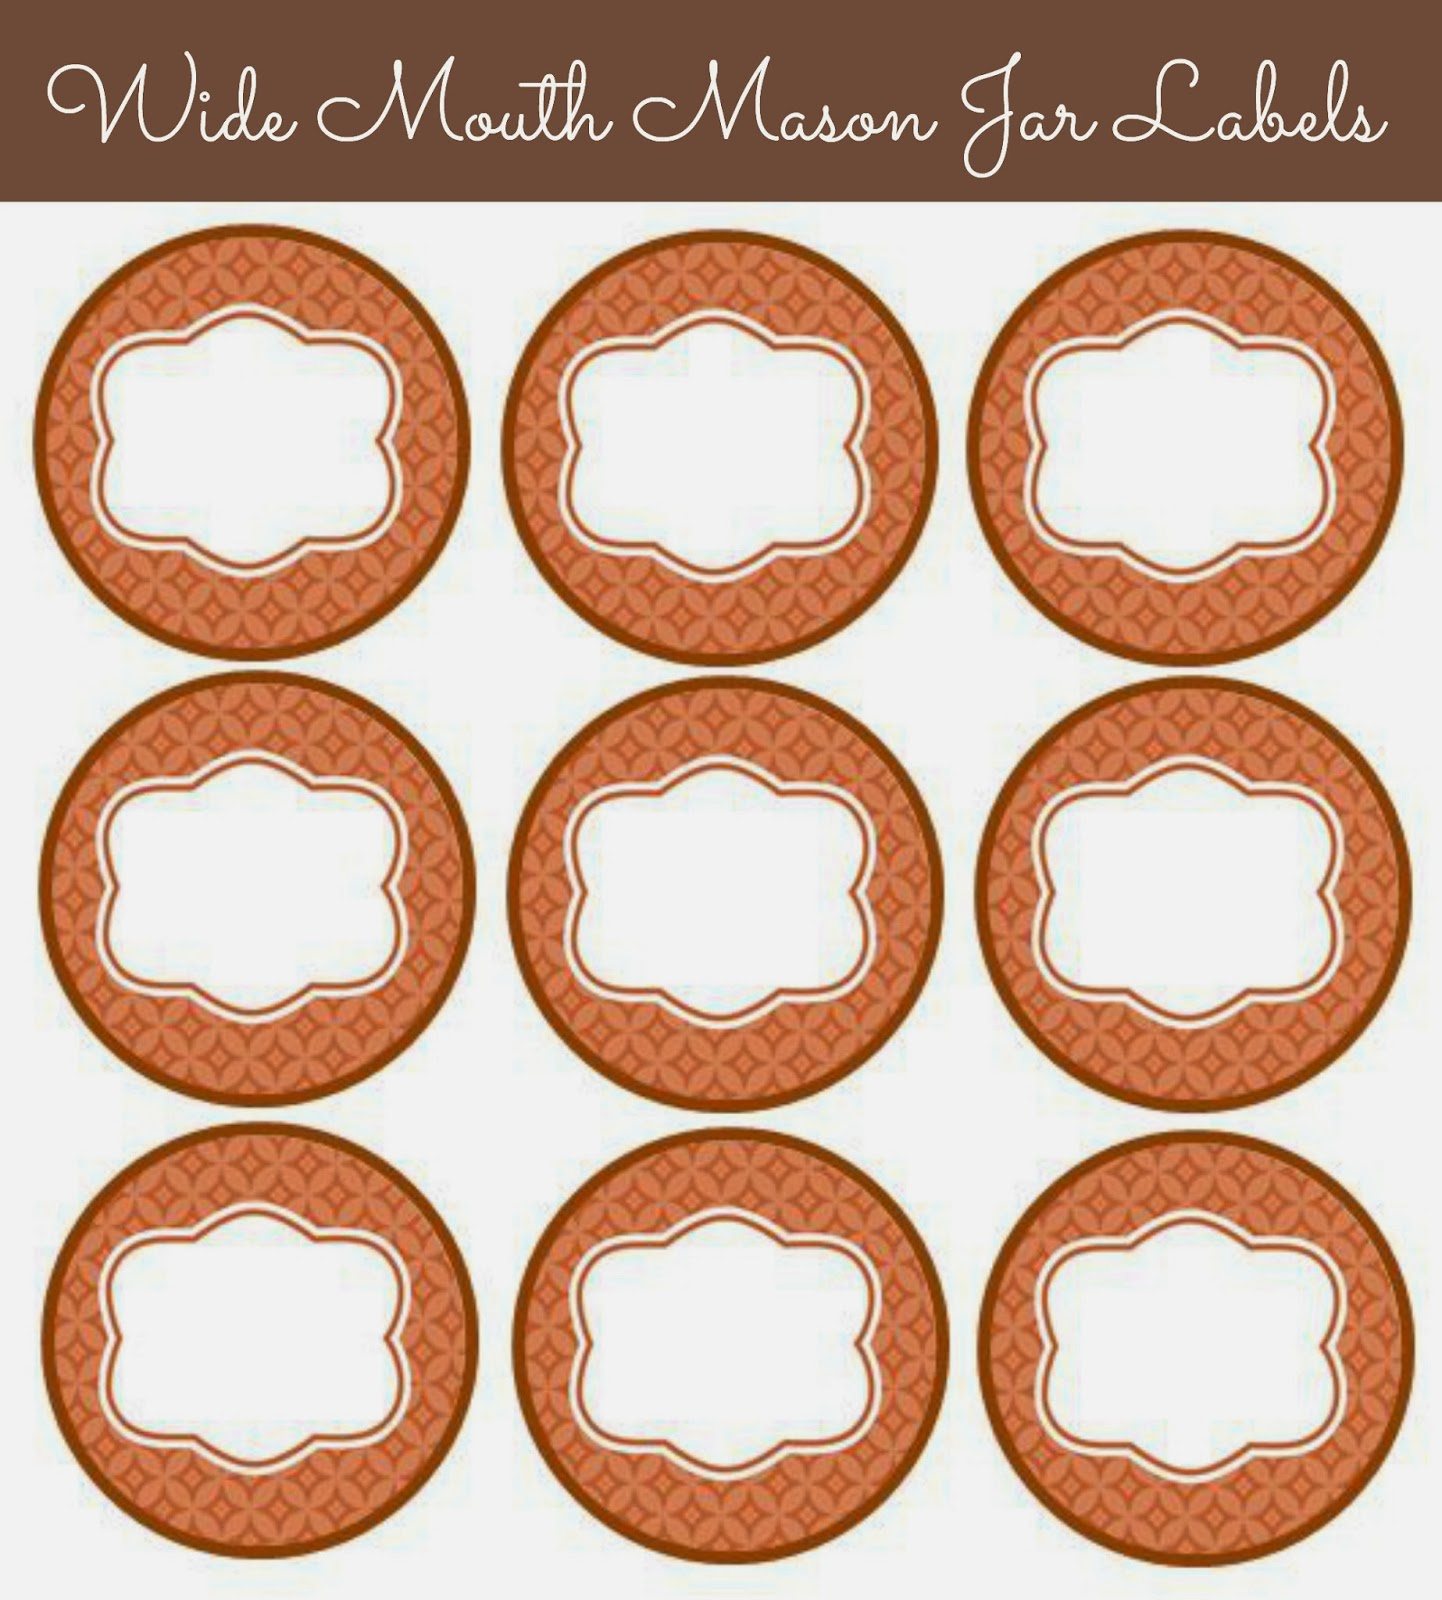 56 Cute Mason Jar Labels | Kittybabylove - Free Printable Mason Jar Labels